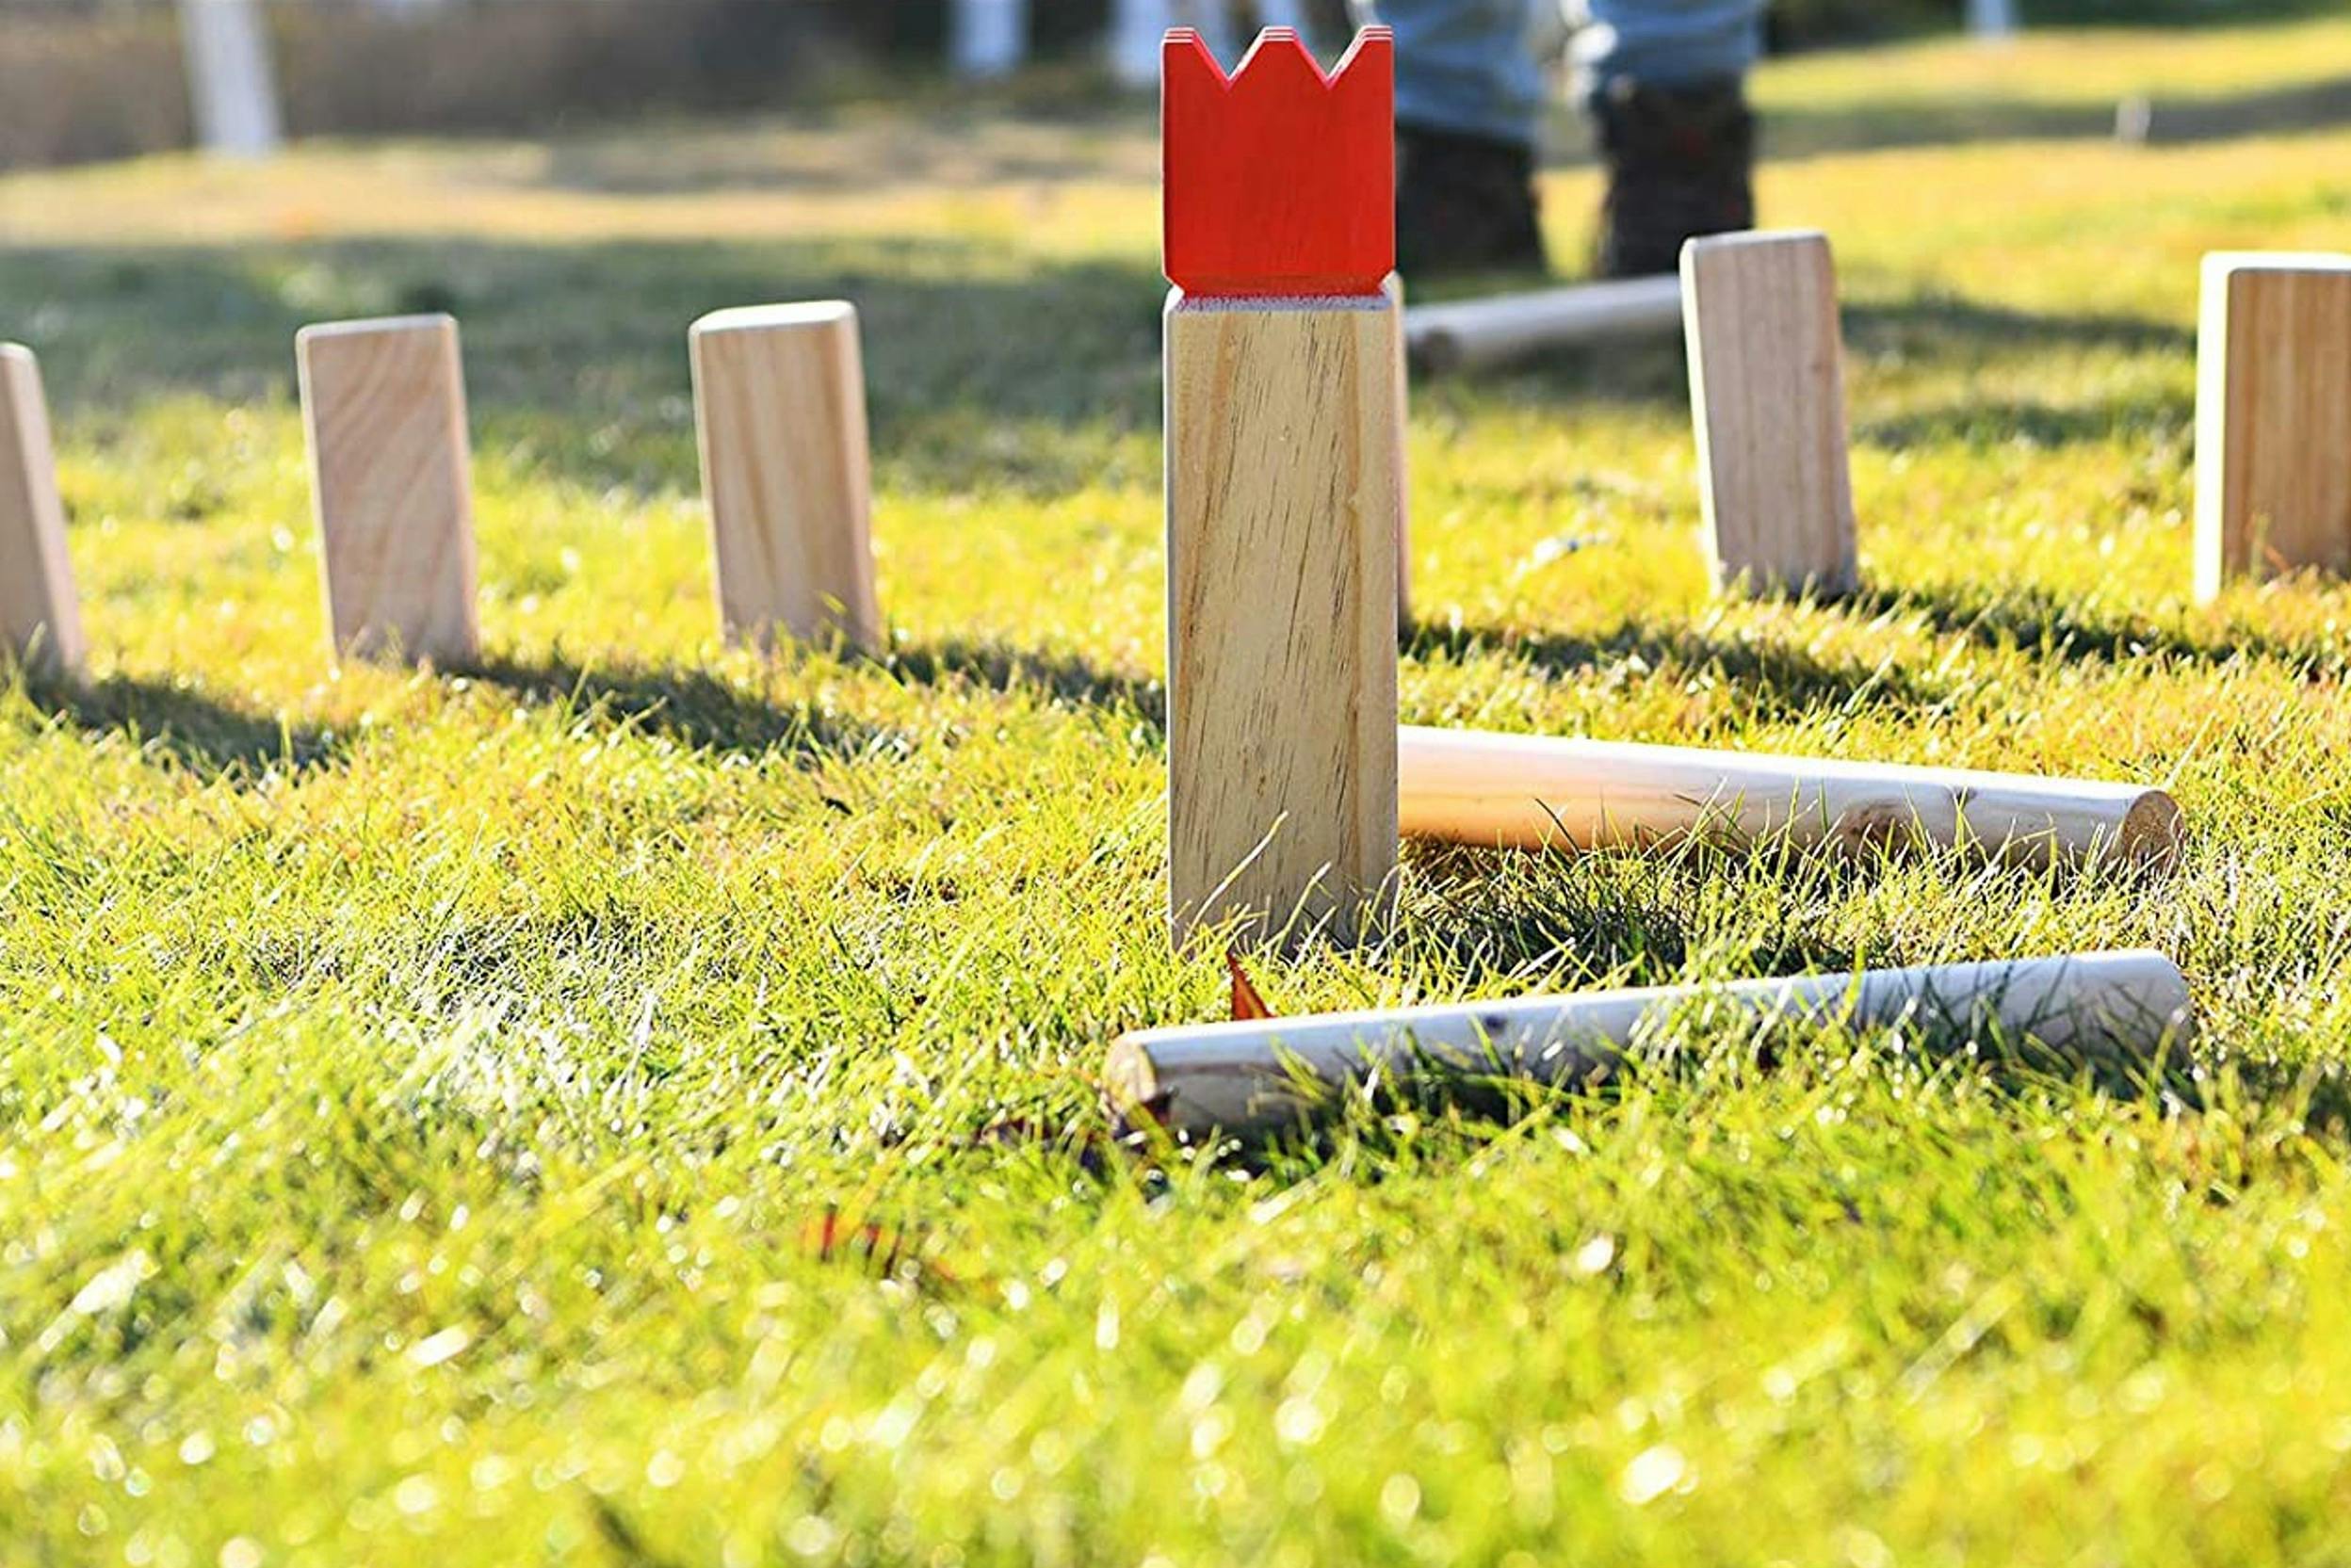 Detailaufnahme eines klassischen Kubb-Spiels aus Holz auf grünem Gras